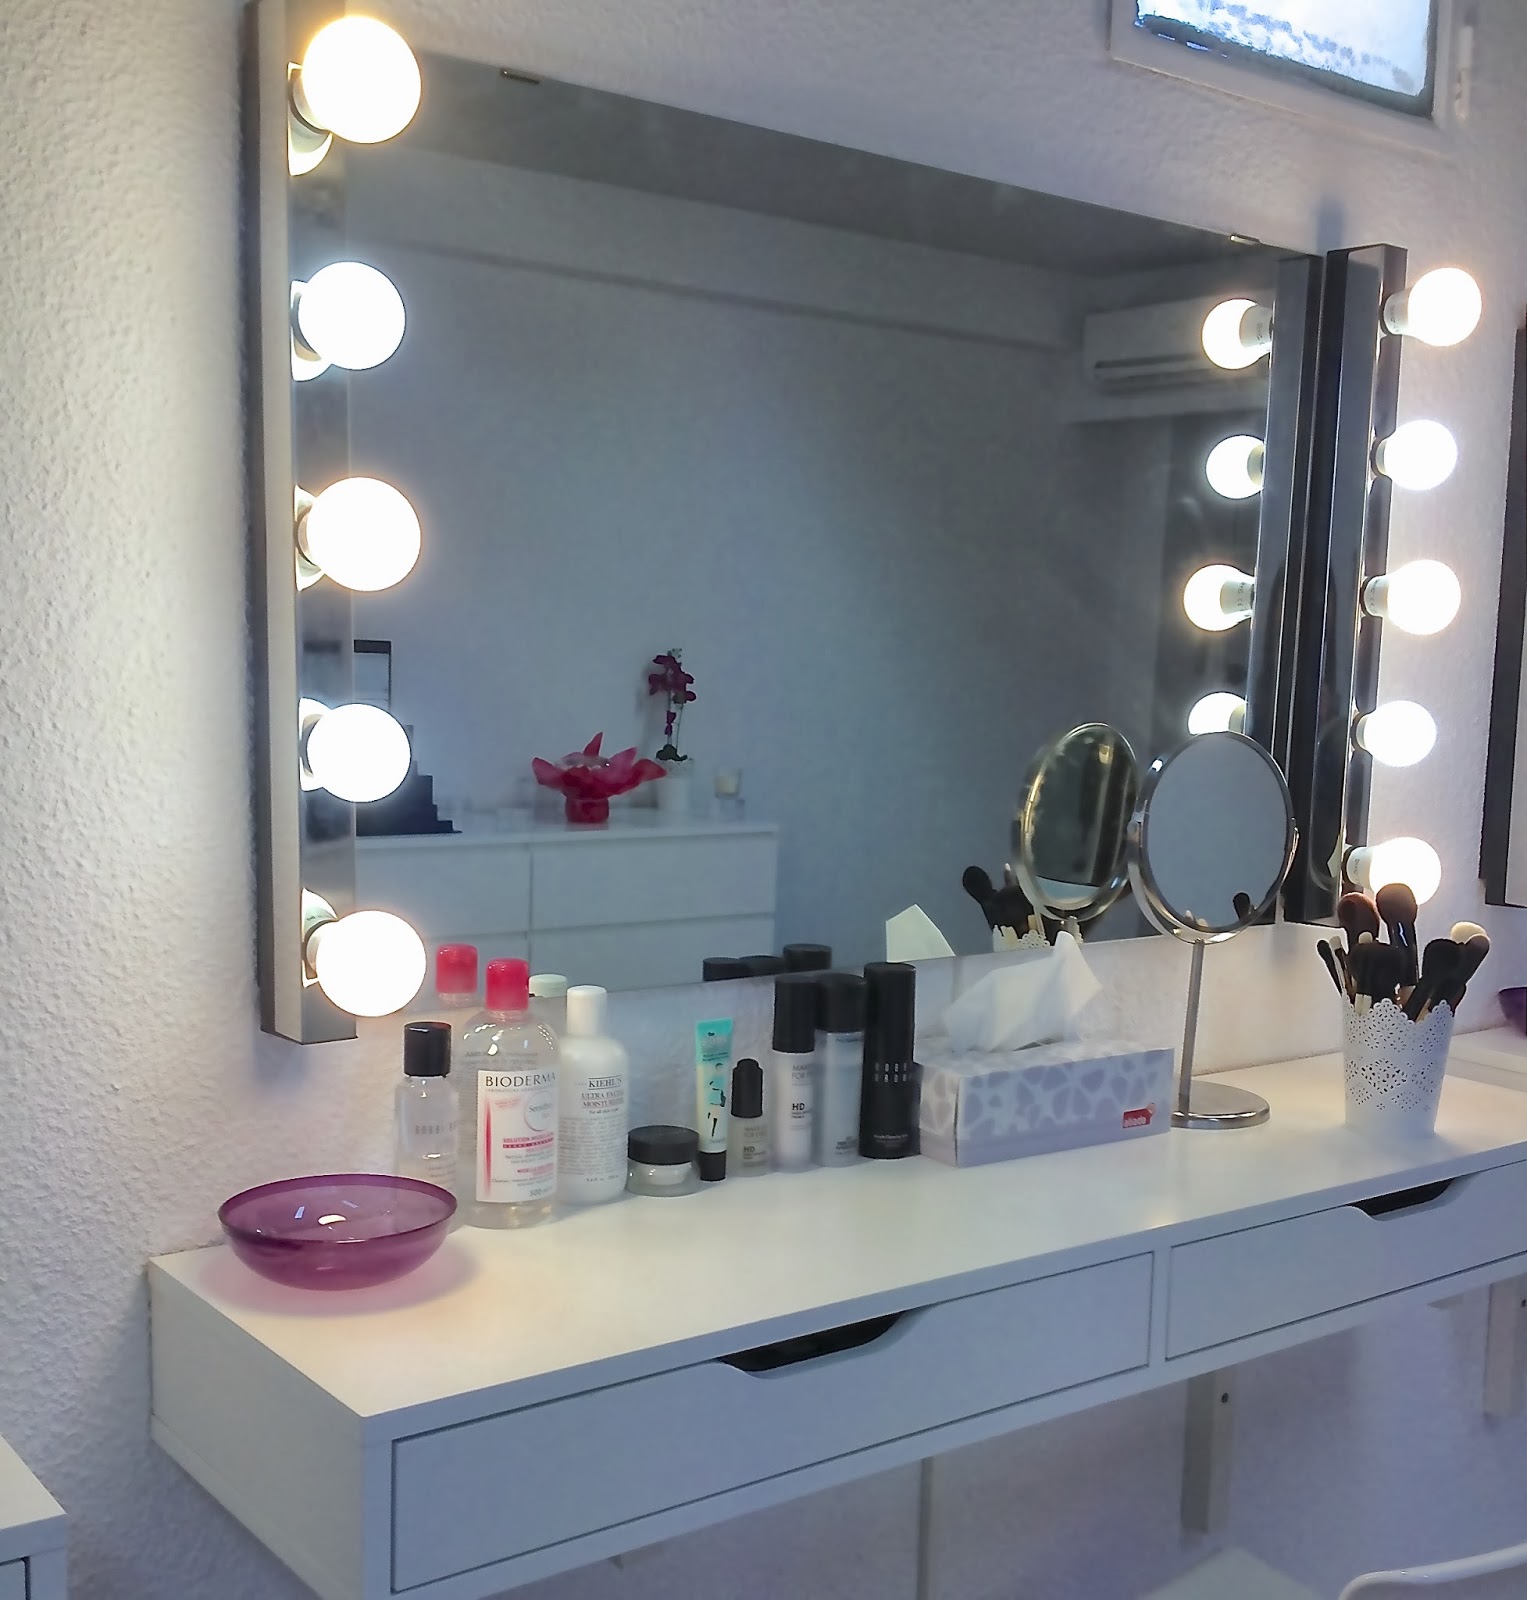 rumor soldadura Maryanne Jones Aparichi Makeup: Blog de Maquillaje y Belleza - Maquilladora Profesional  Madrid: Qué luces poner en un tocador: la mejor luz para maquillarse